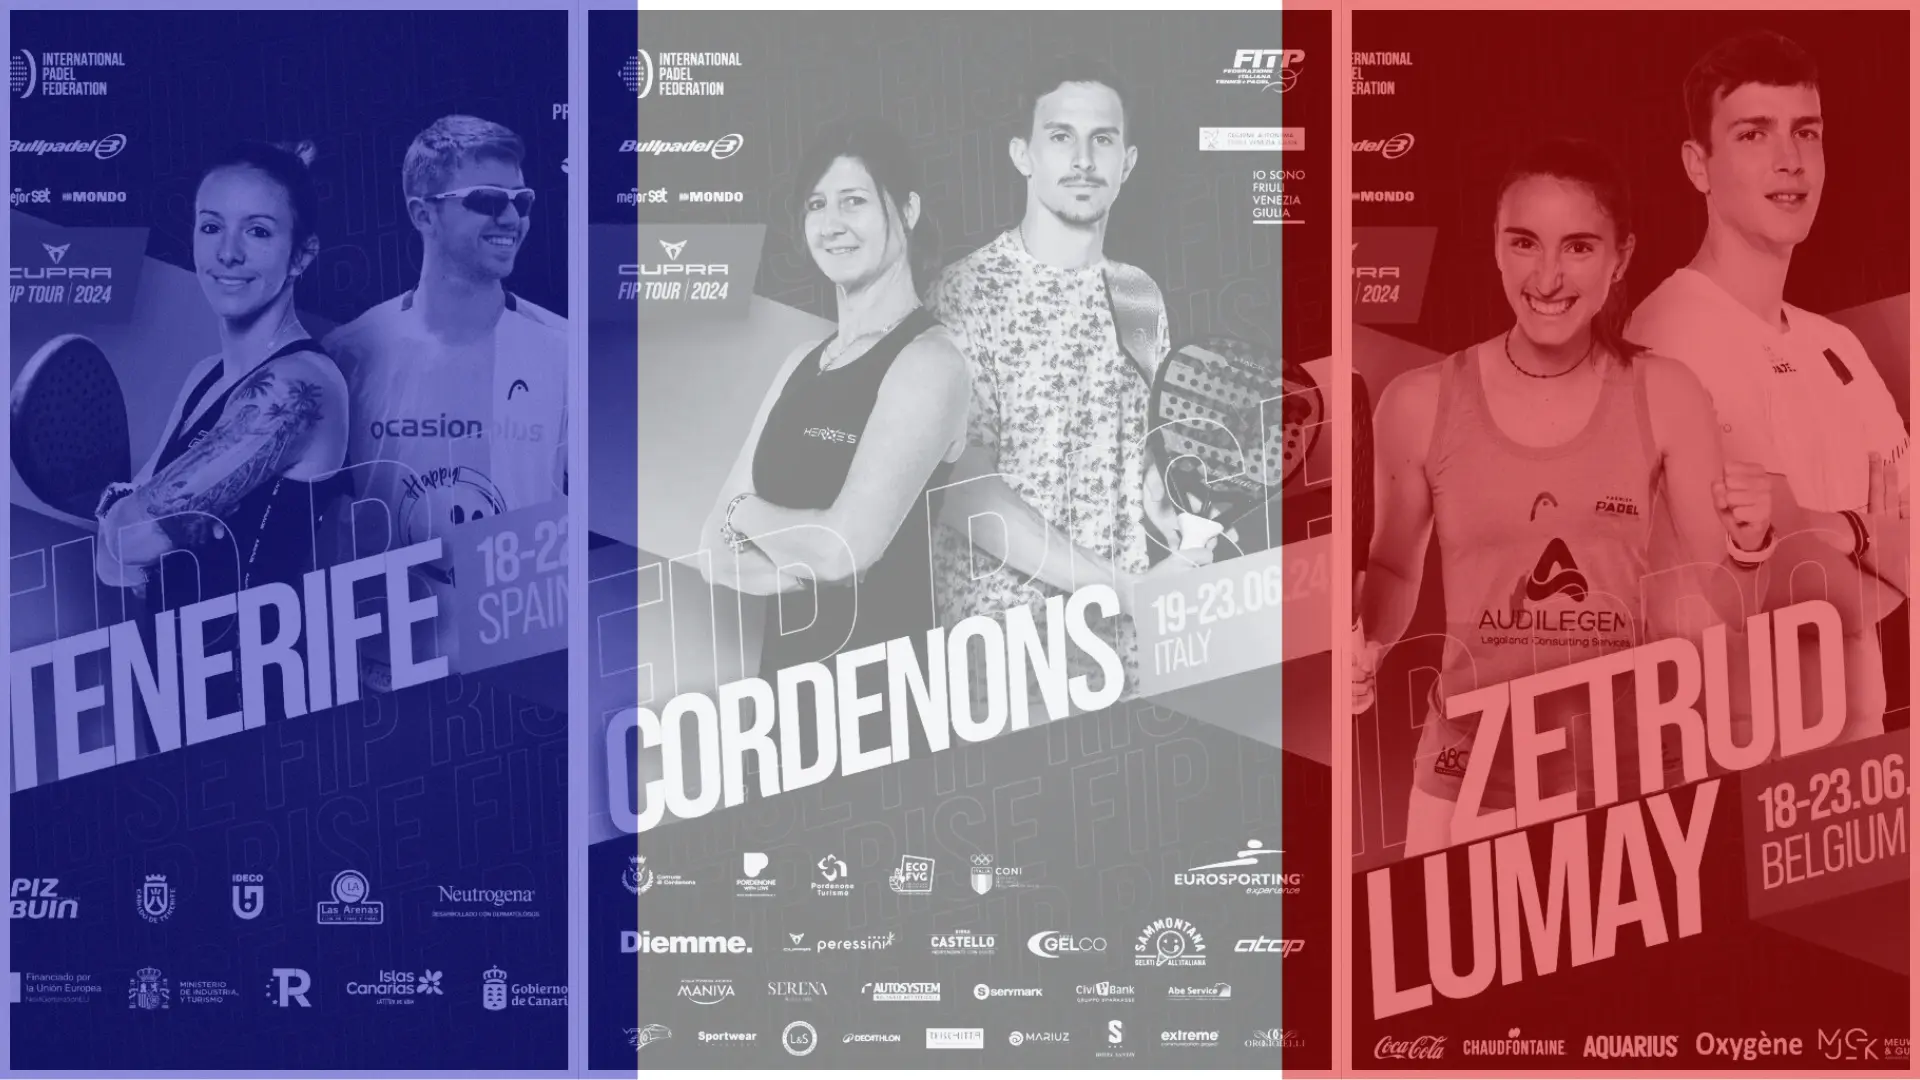 FIP Tour – Plus de Français en Belgique et à Tenerife, encore quelques chances à Cordenons